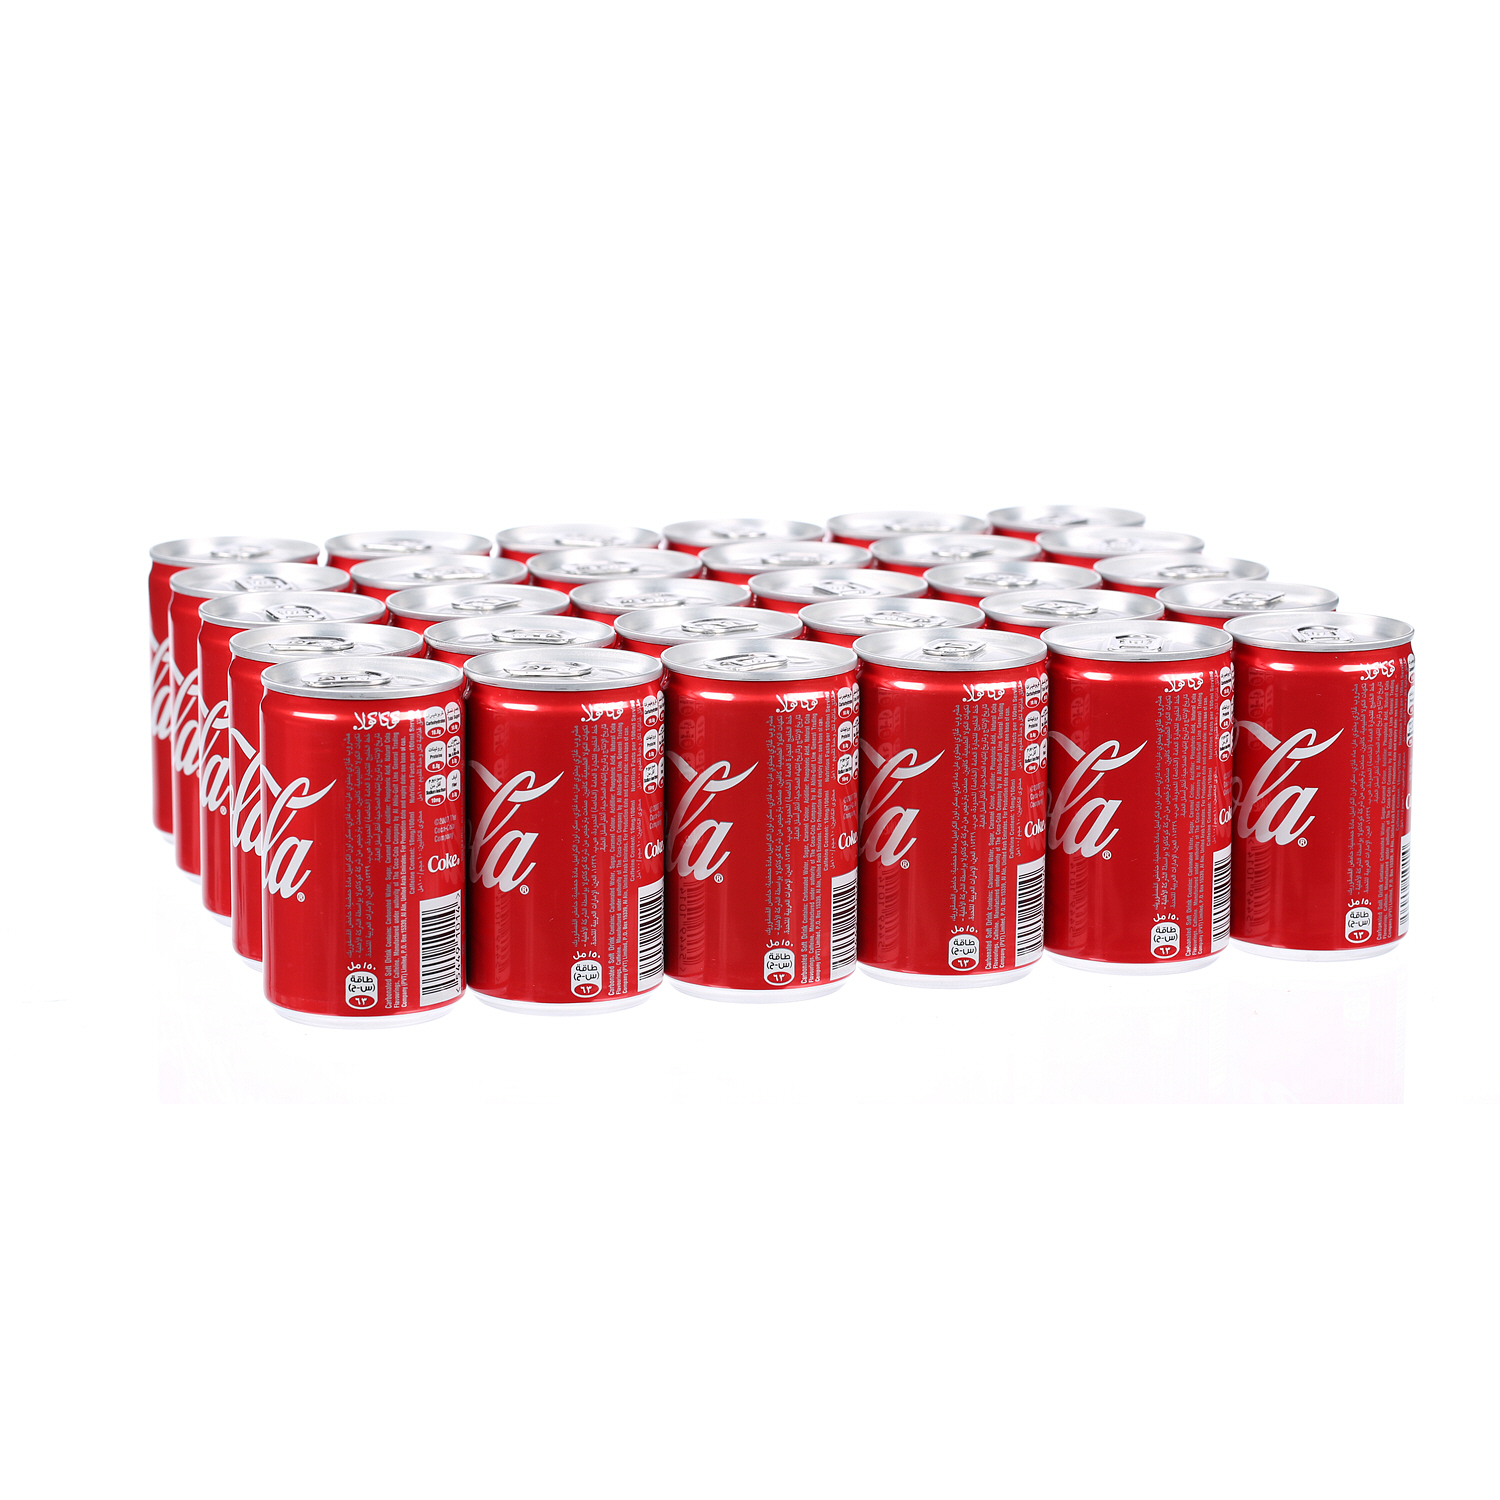 كوكا كولا مشروب غازية 150 مل × 30 عبوة